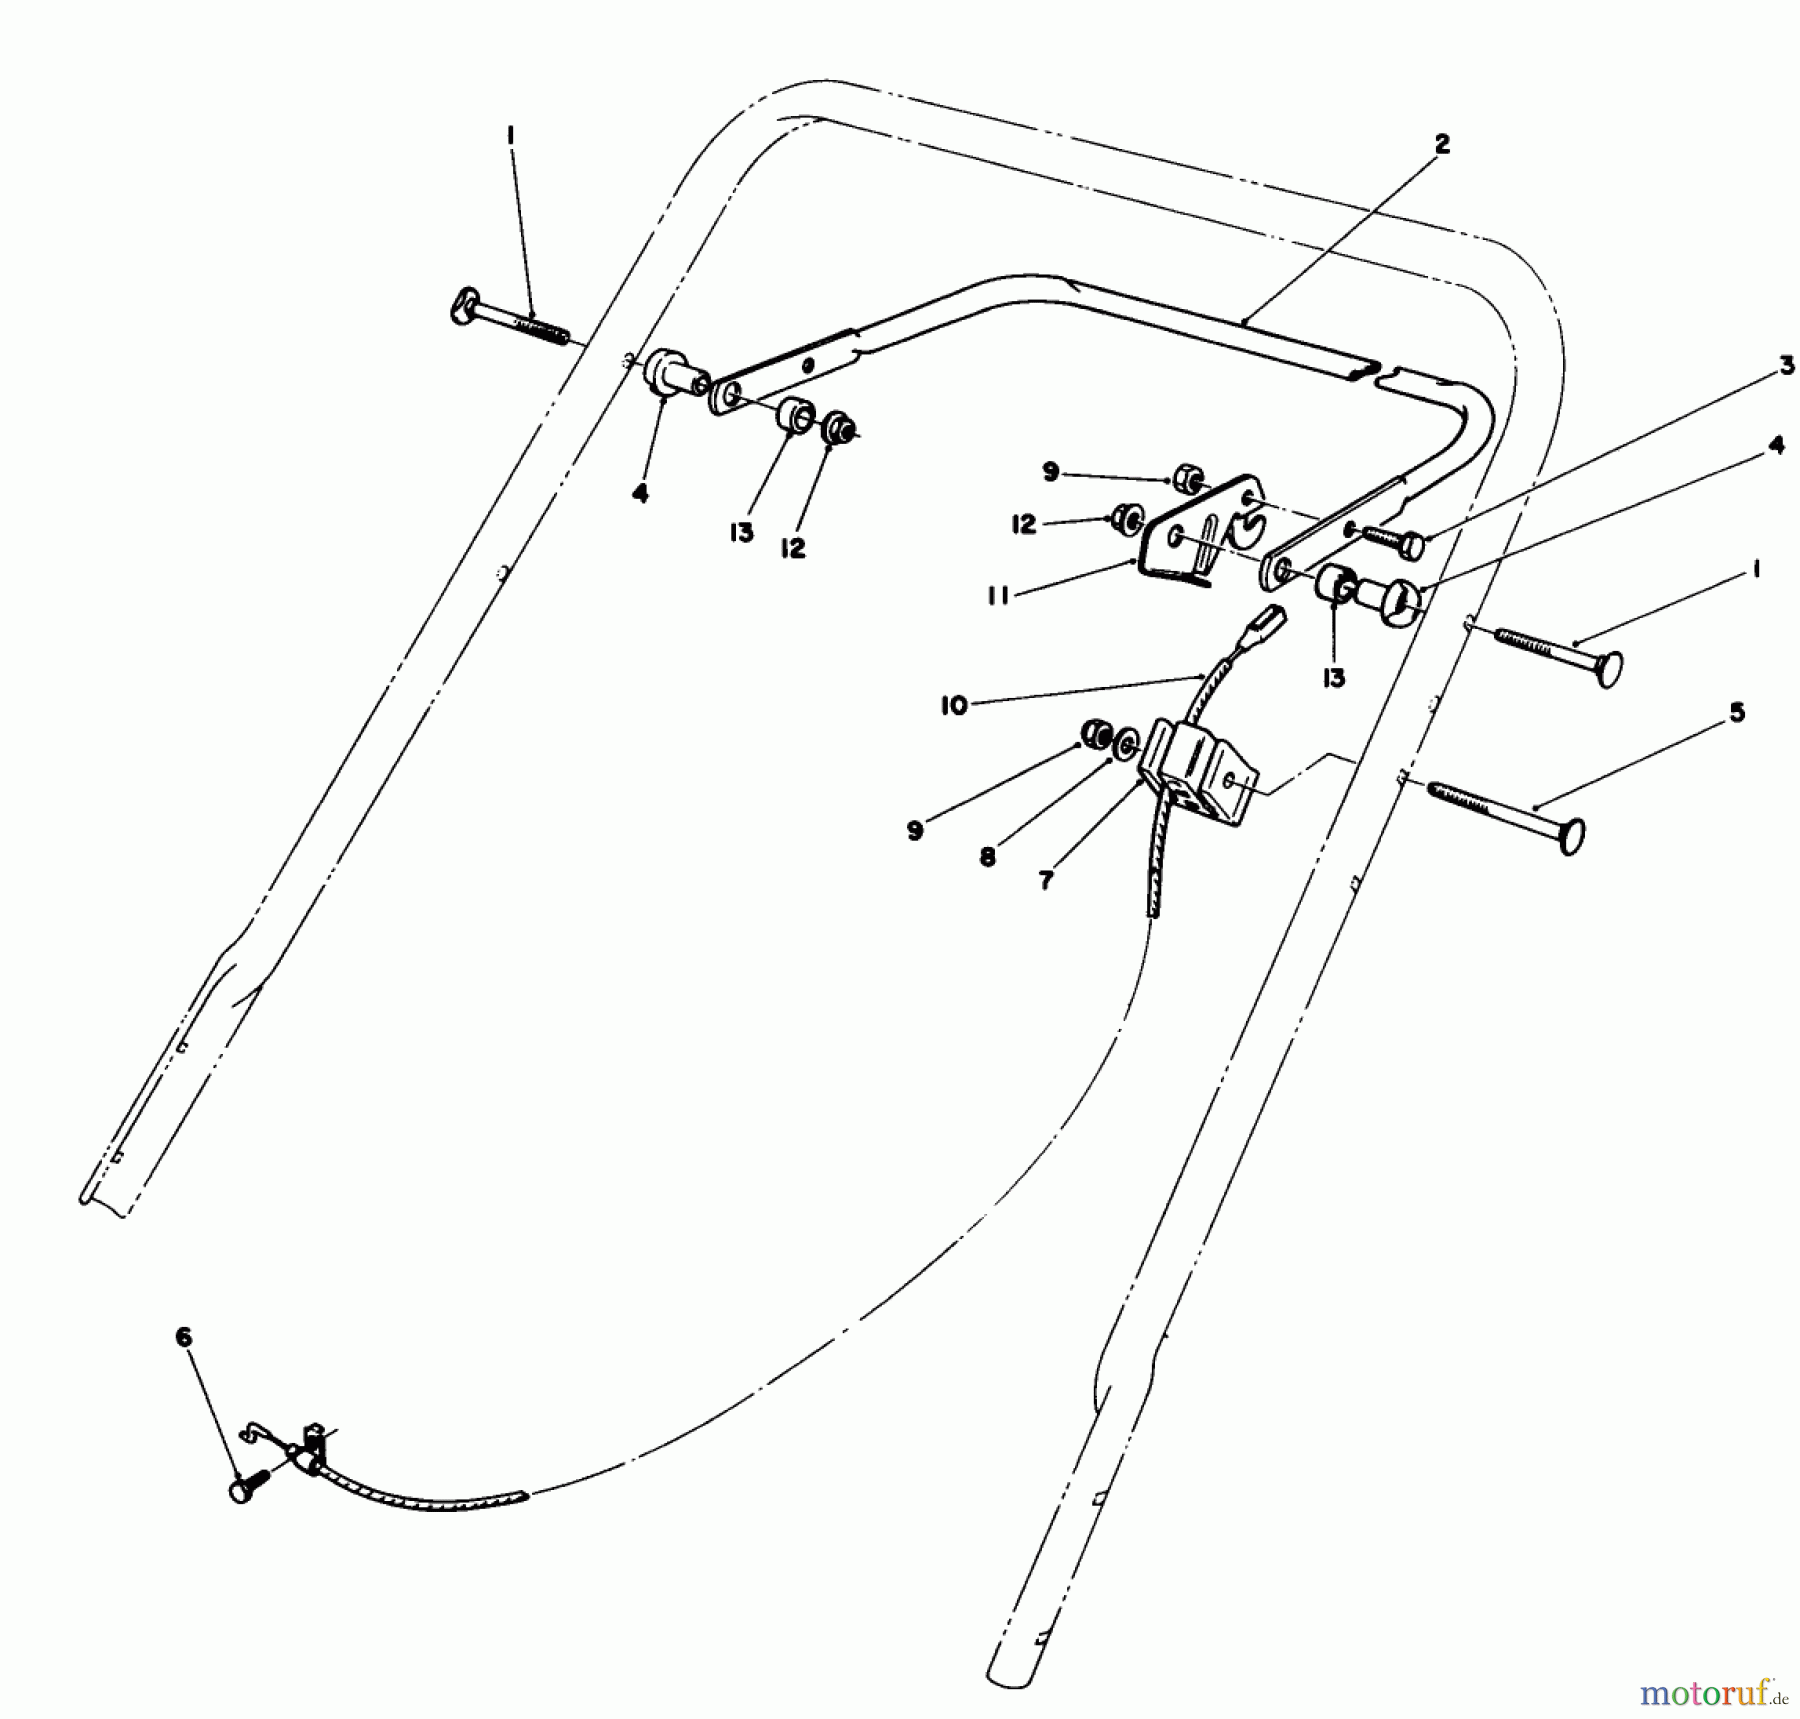  Toro Neu Mowers, Walk-Behind Seite 1 20588C - Toro Lawnmower, 1989 (9000001-9999999) CONTROL ASSEMBLY